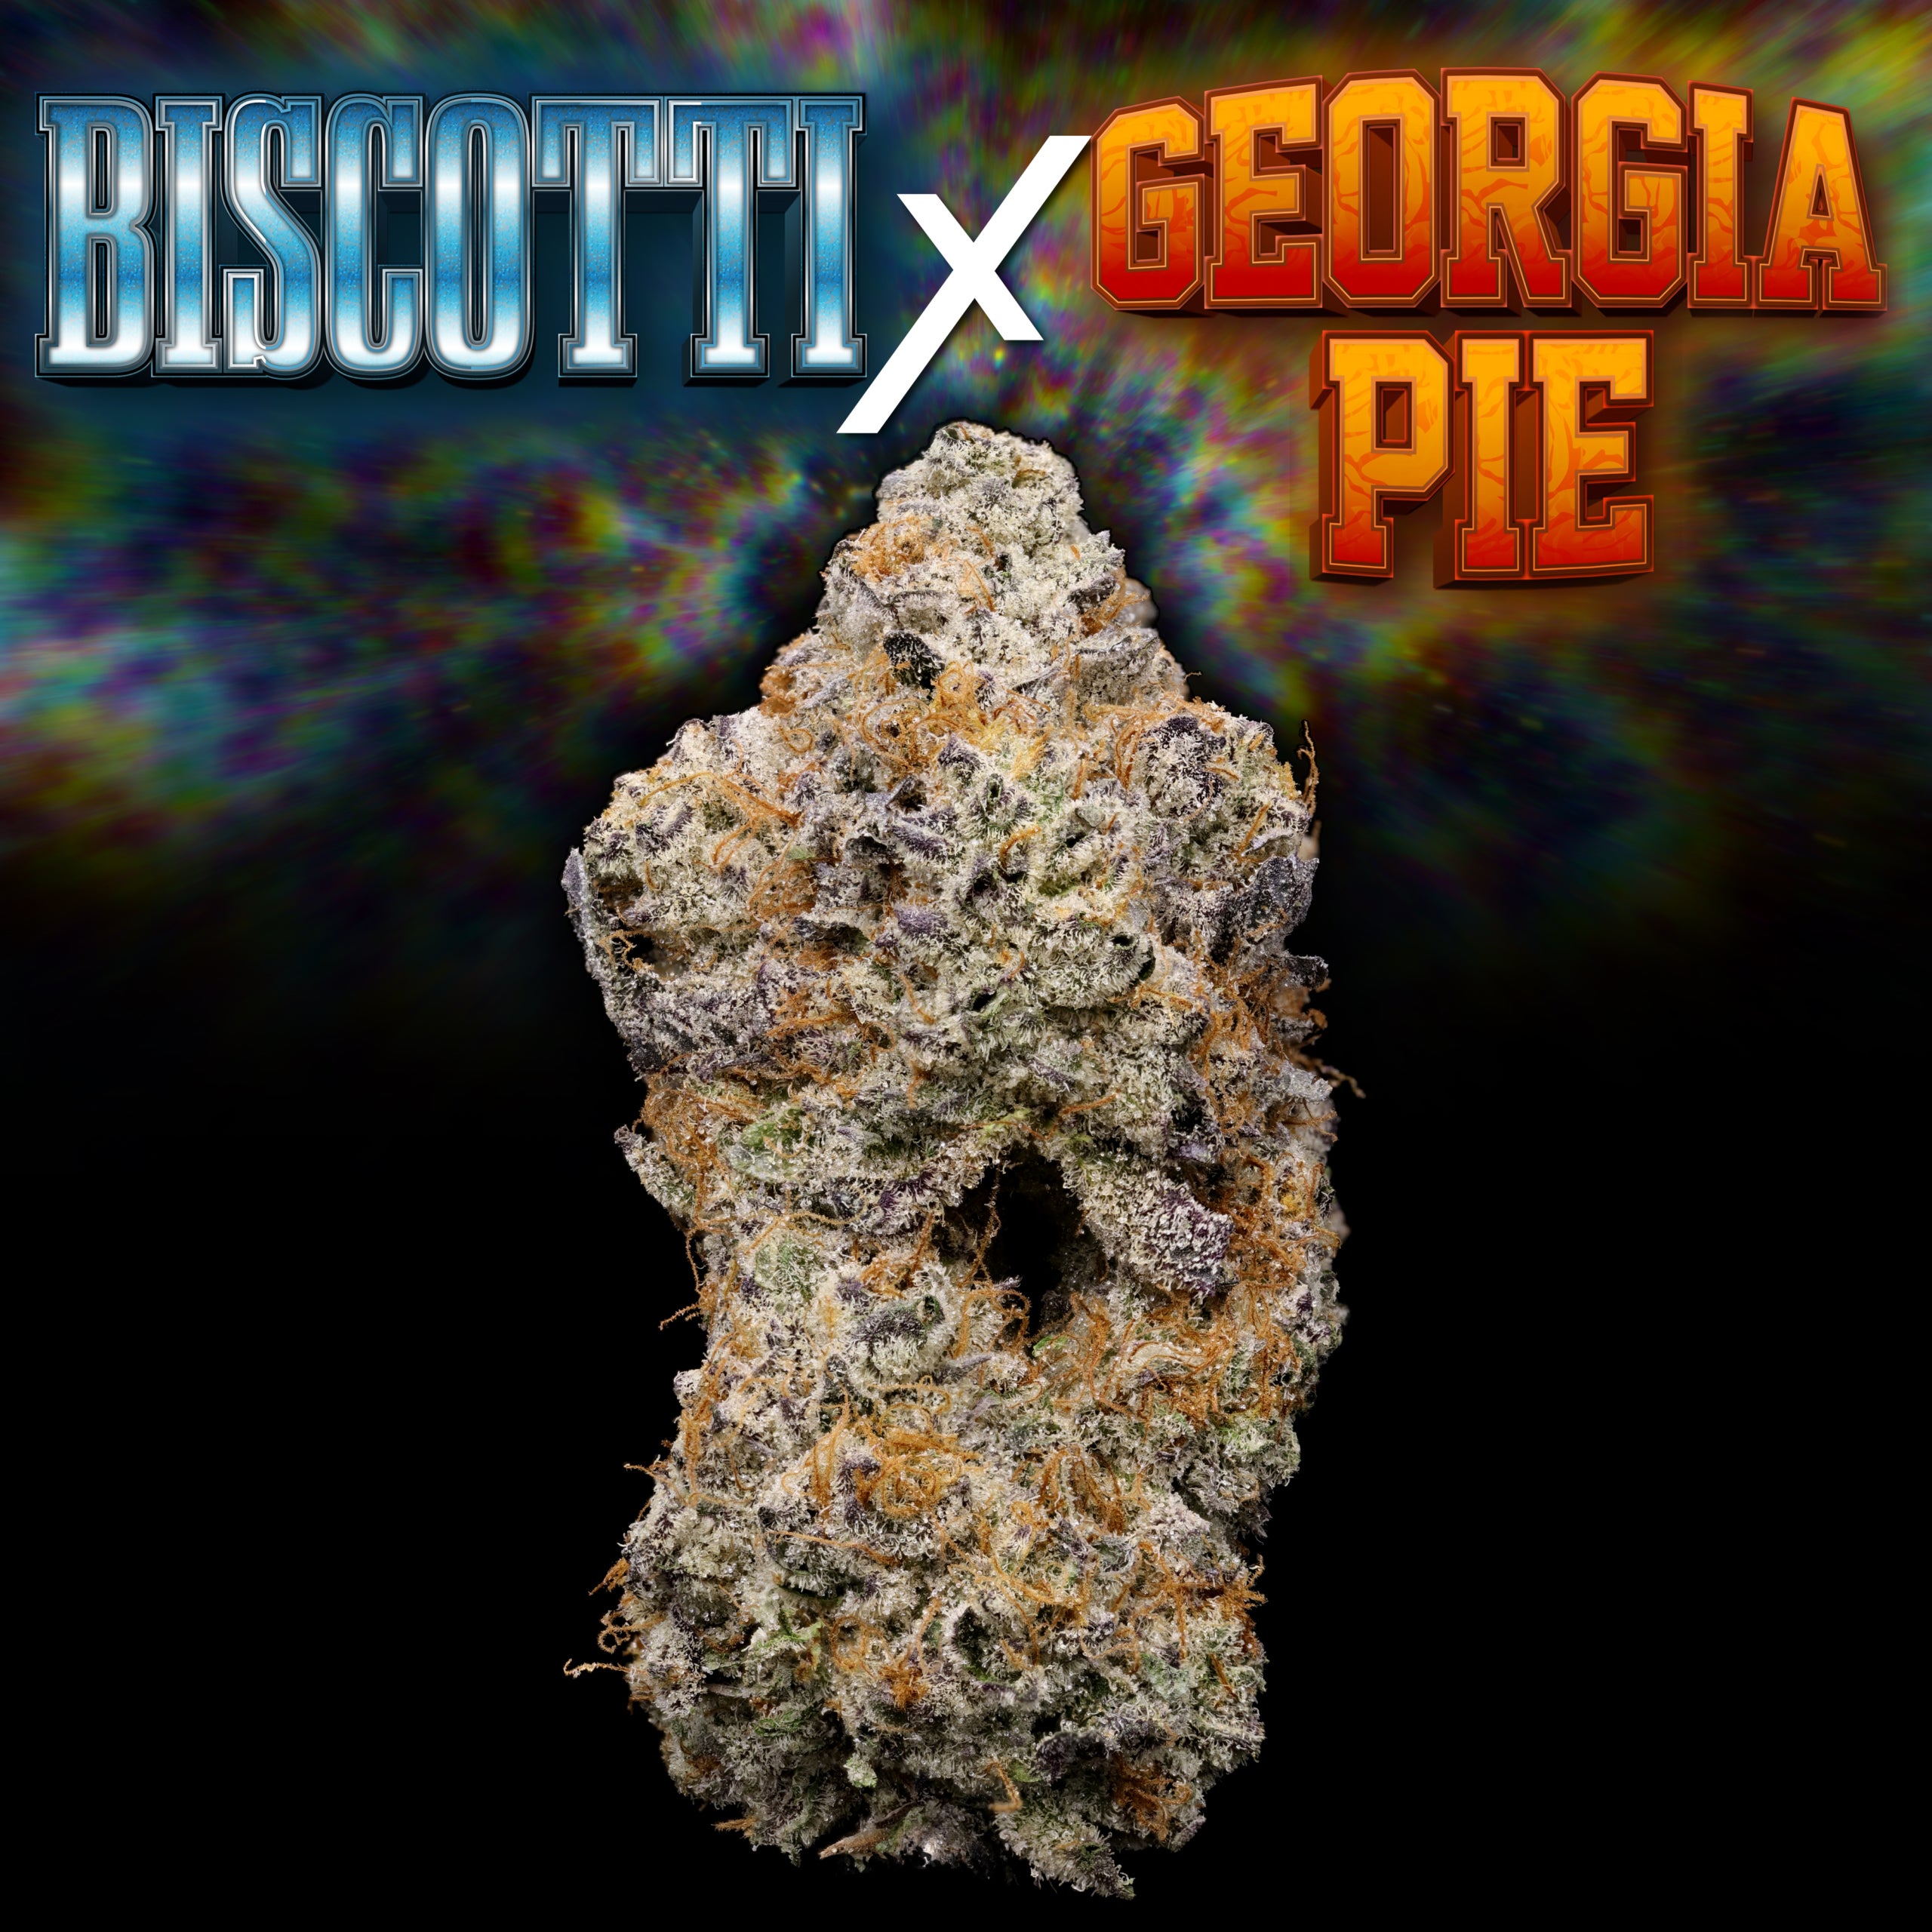 Georgia Pie x Biscotti Thumbnail